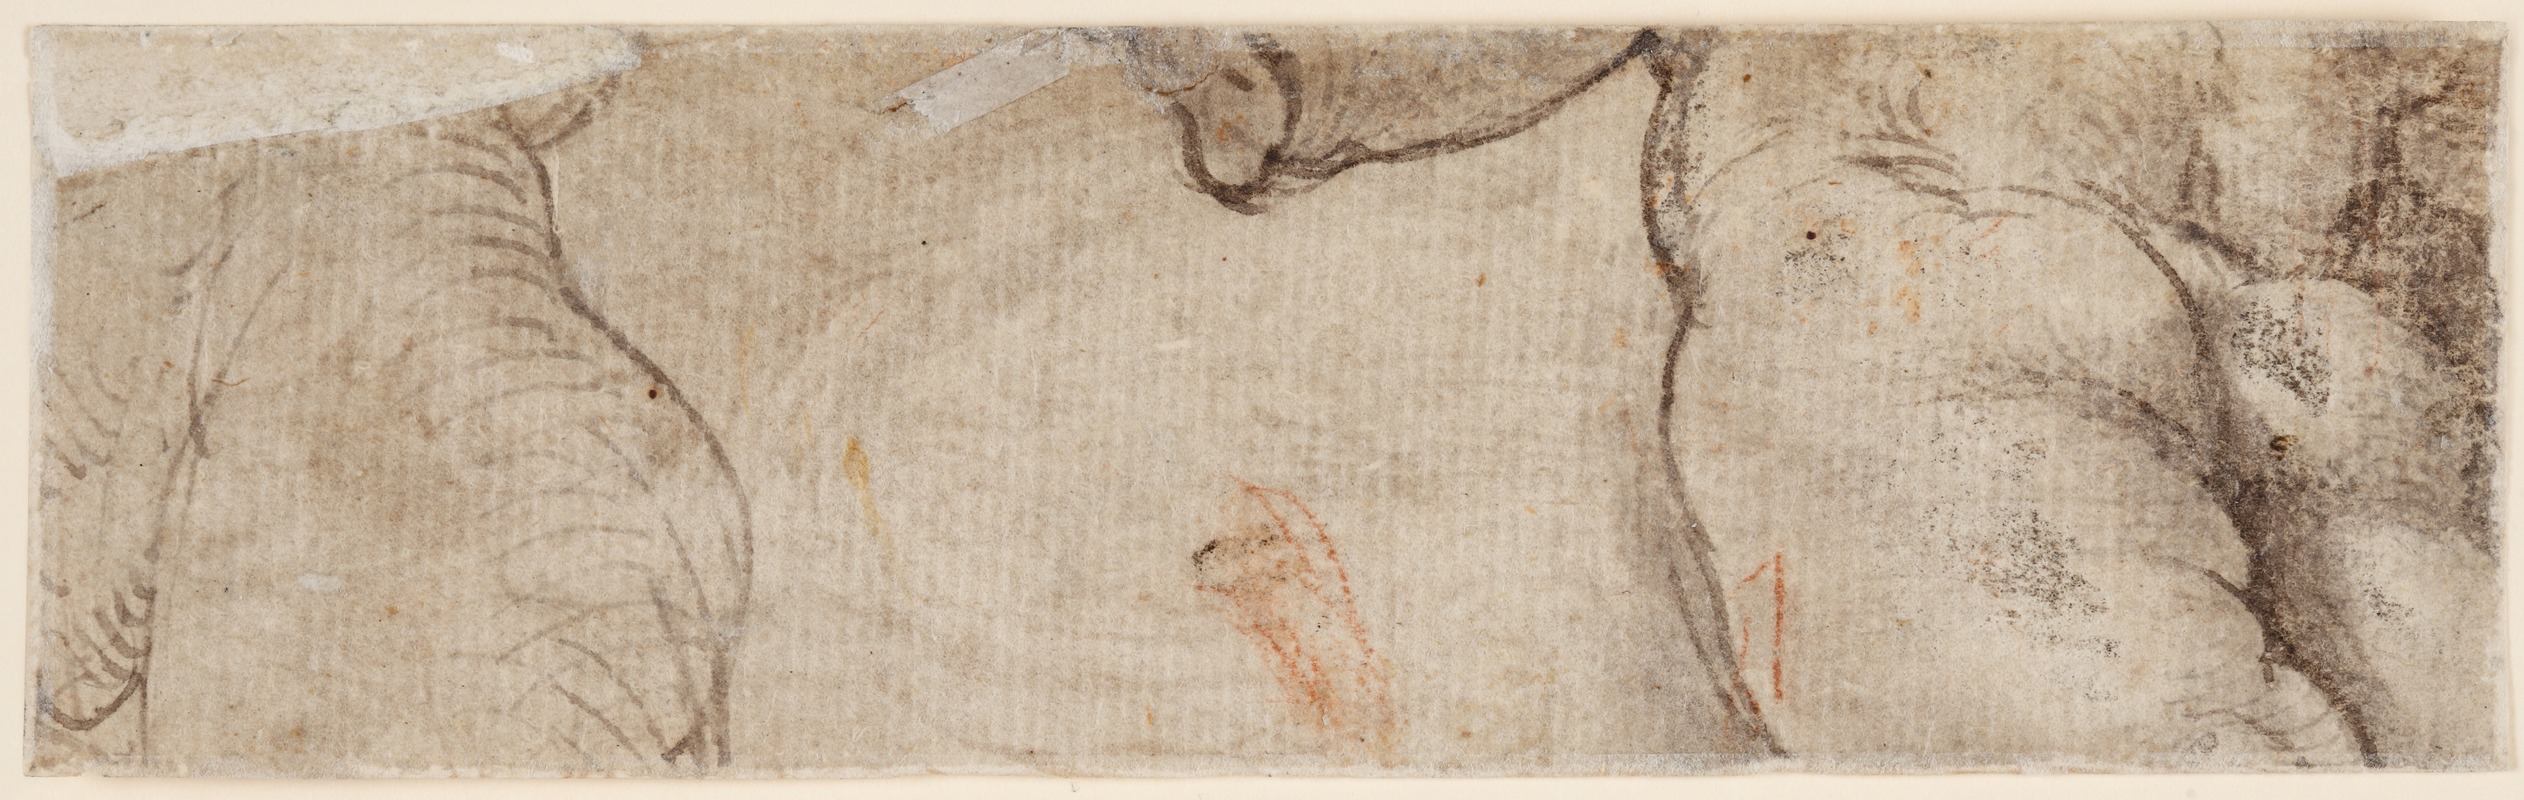 Parmigianino - Zwei Puttenkörper (fragmentarisch)